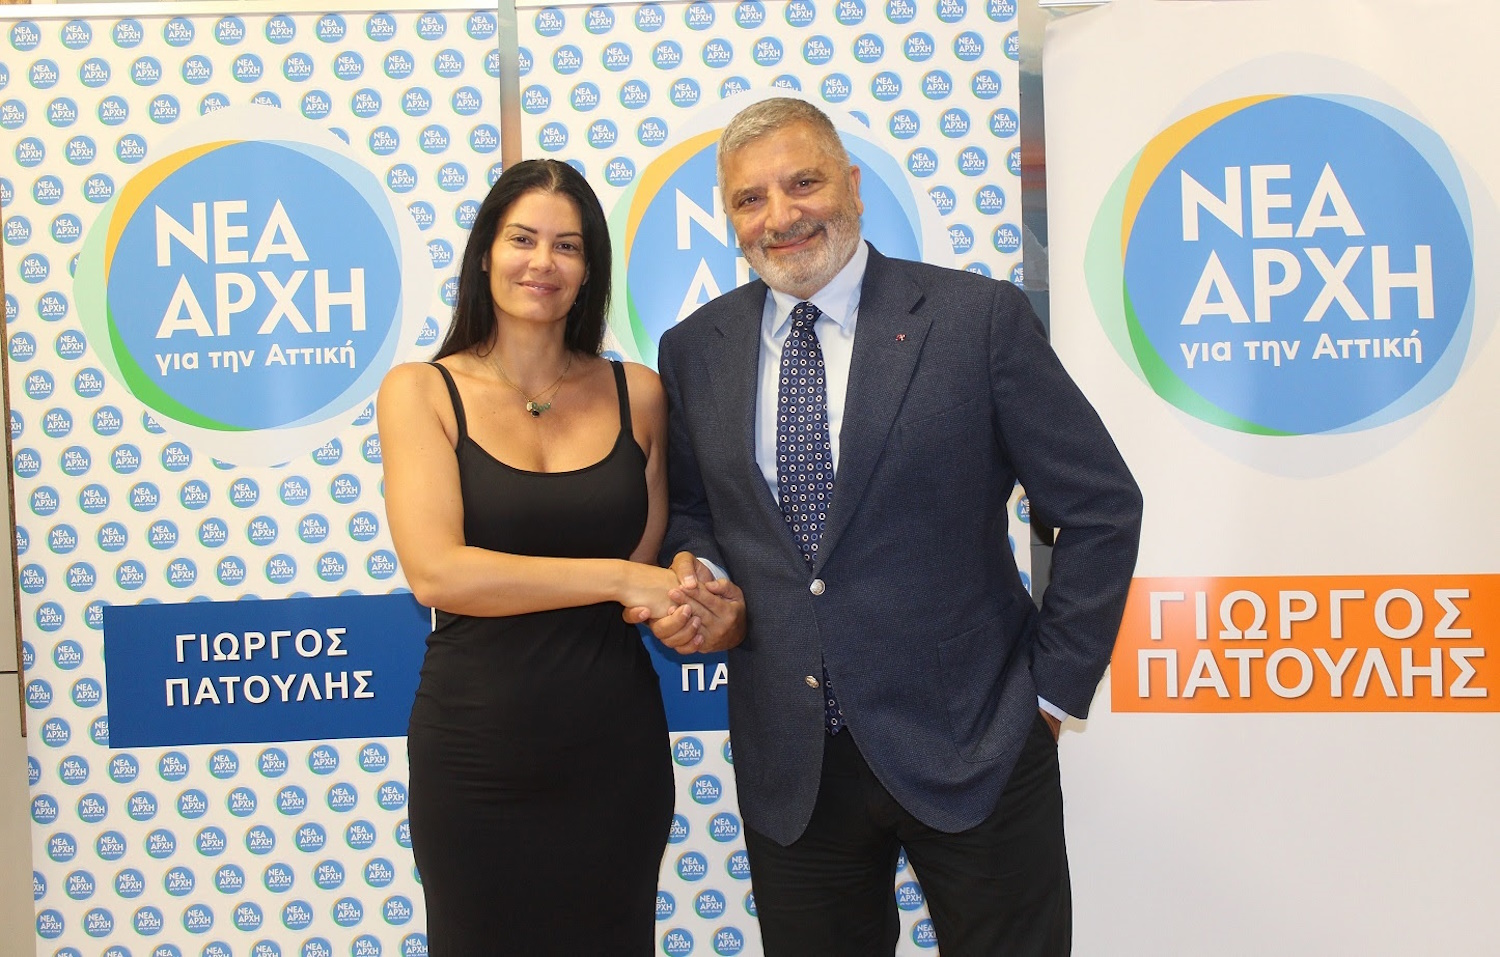 Η Μαρία Κορινθίου κατεβαίνει στις αυτοδιοικητικές εκλογές ως υποψήφια Περιφερειακή Σύμβουλος με τον Γιώργο Πατούλη